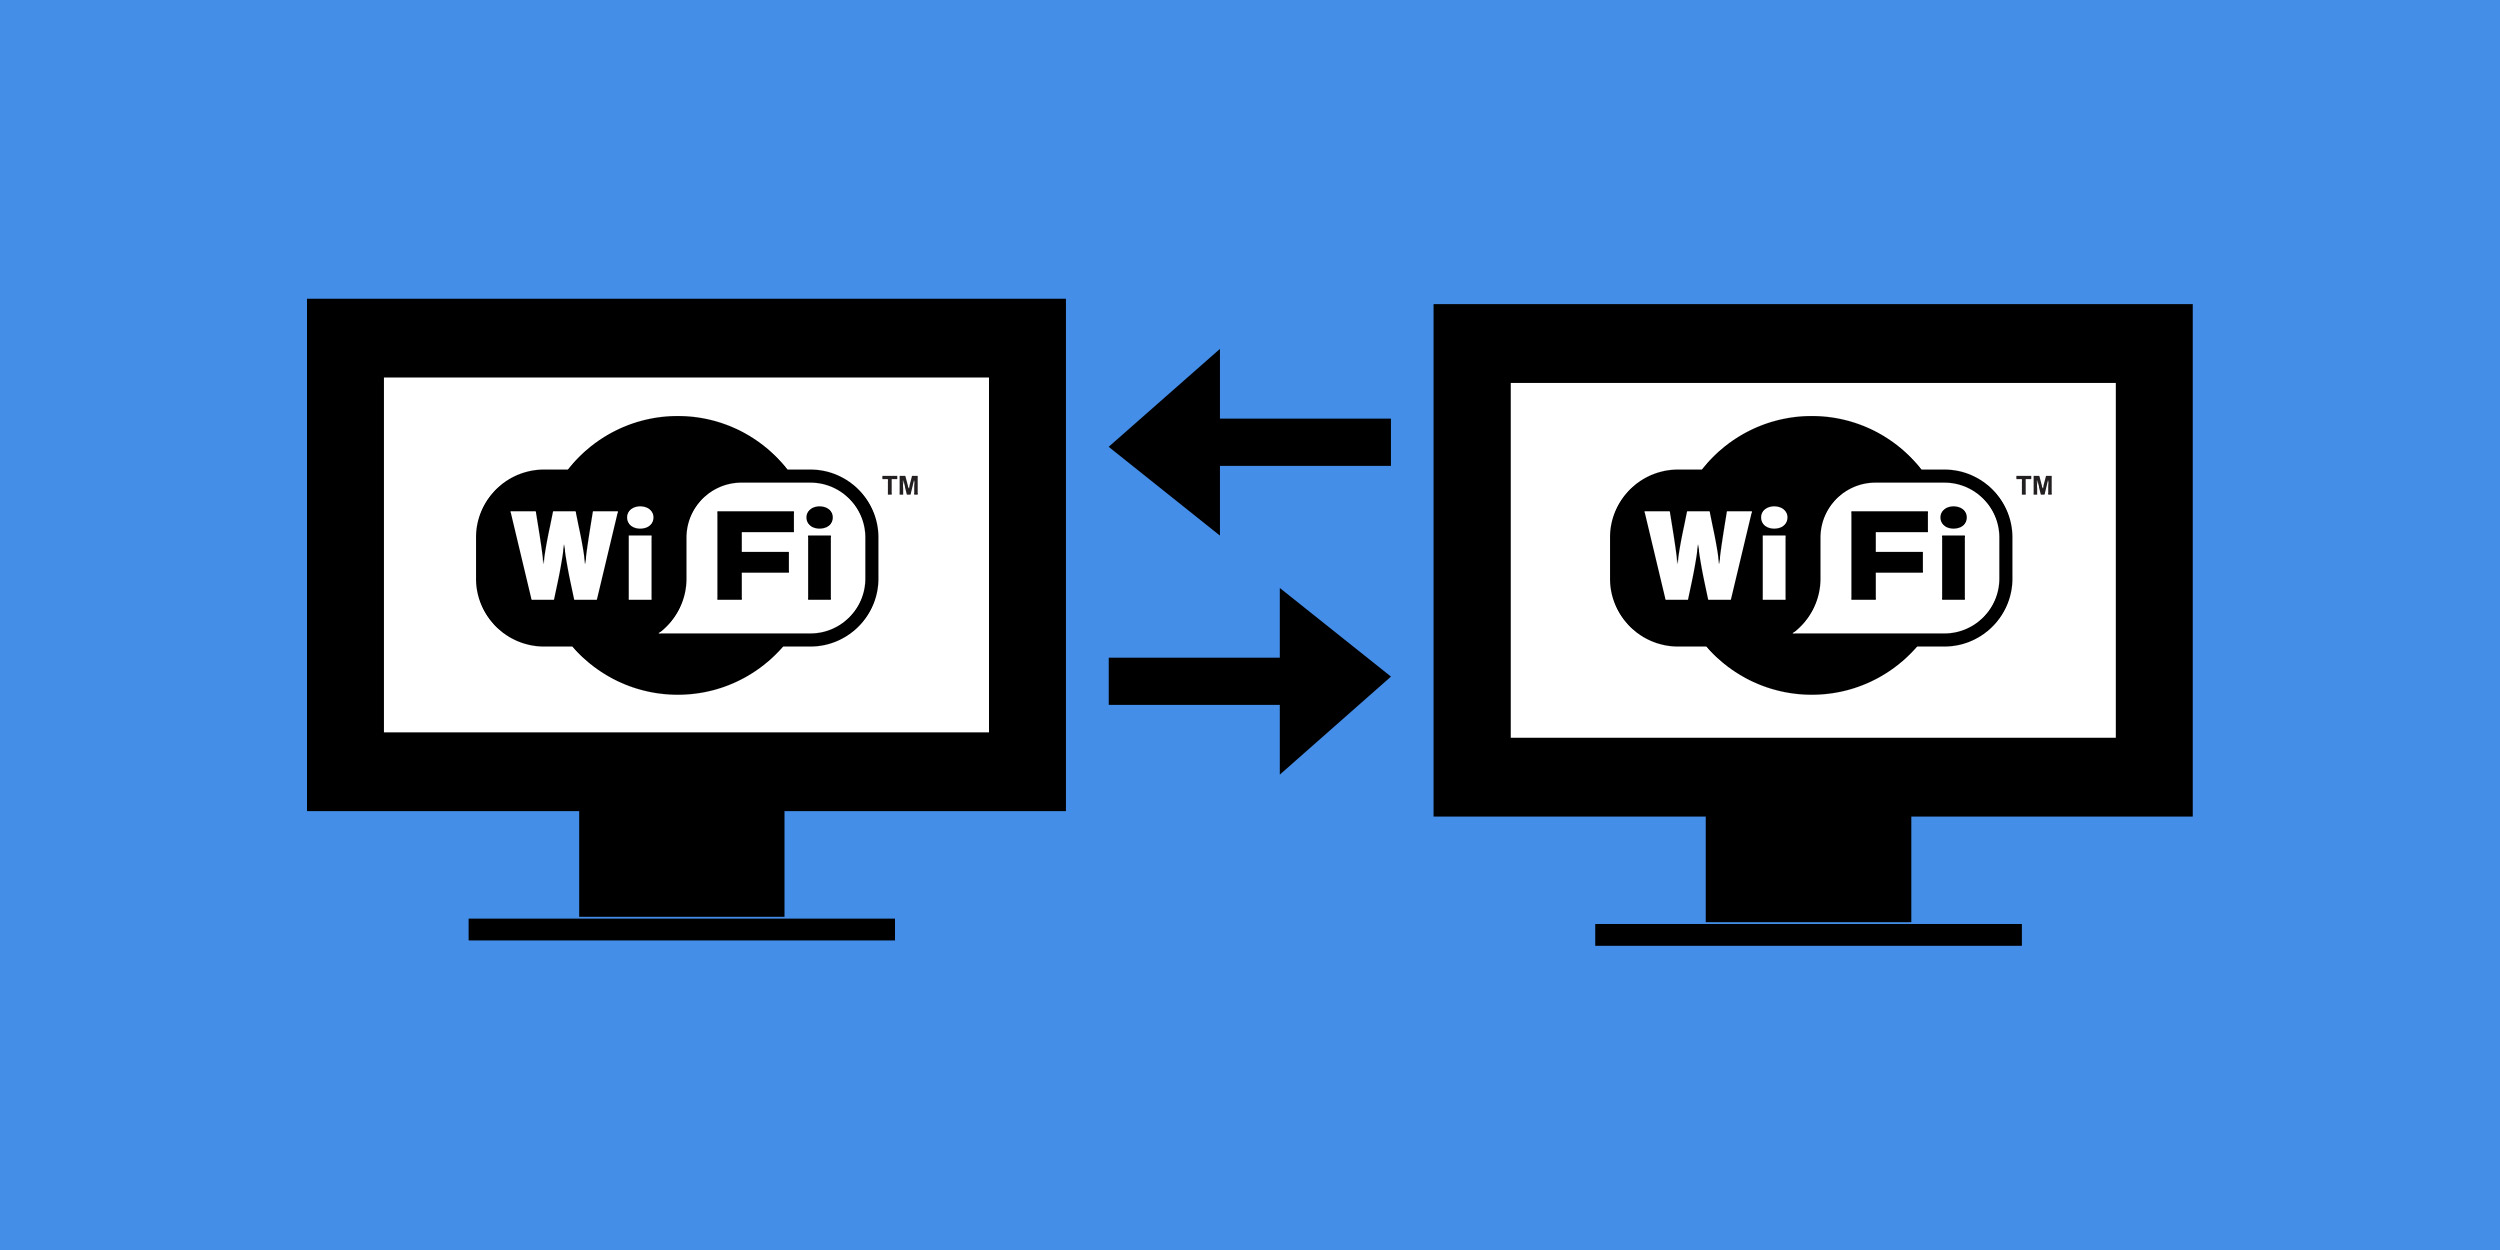 Показываю как можно передавать файлы со смартфона на компьютер (и обратно) через Wi-Fi. -